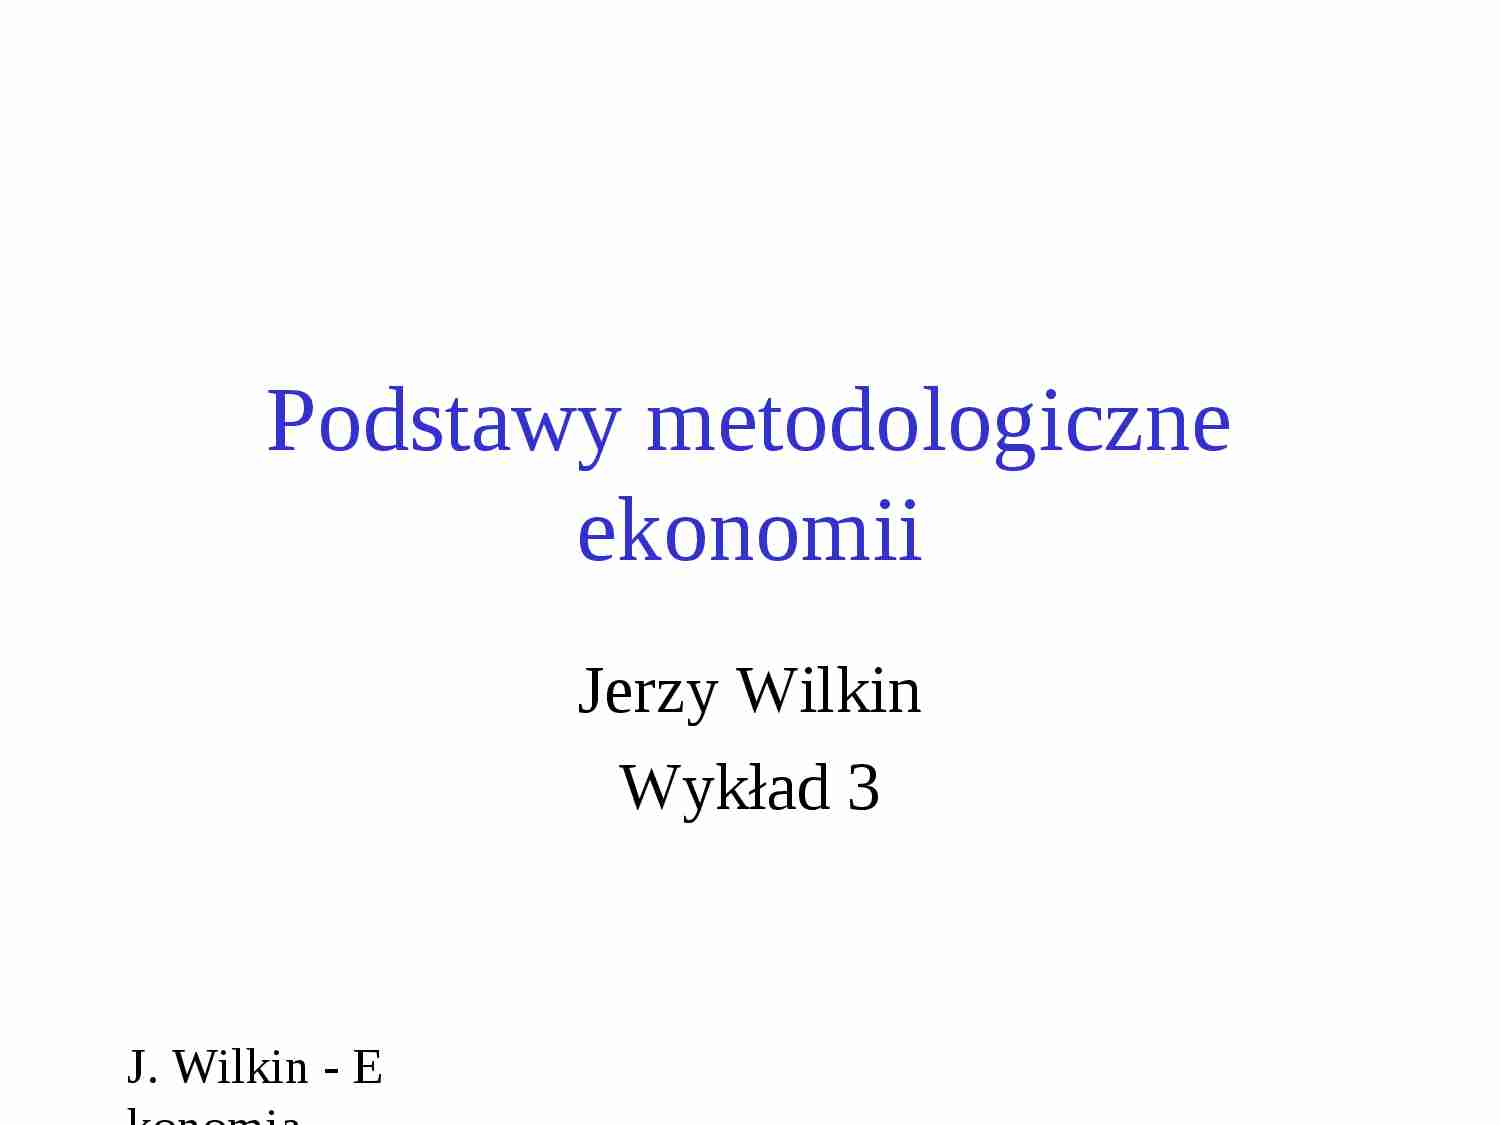 Podstawy metodologiczne ekonomii-prezentacja - strona 1